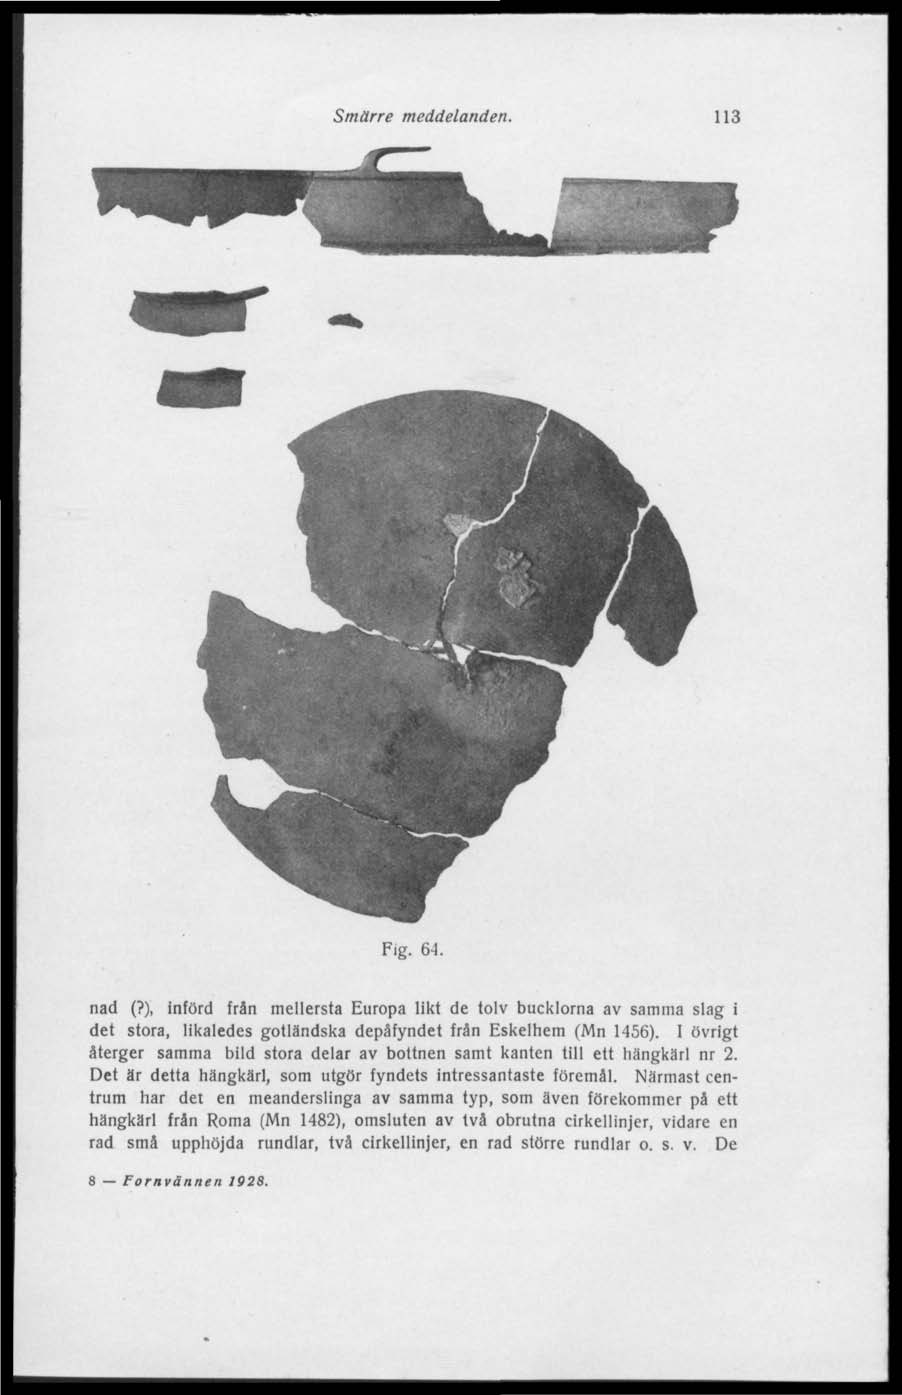 Smärre meddelanden. 113 Fig. 64. nad (?), införd frän mellersta Europa likt de tolv bucklorna av samma slag i det stora, likaledes gotländska depåfyndet från Eskelhem (Mn 1456).